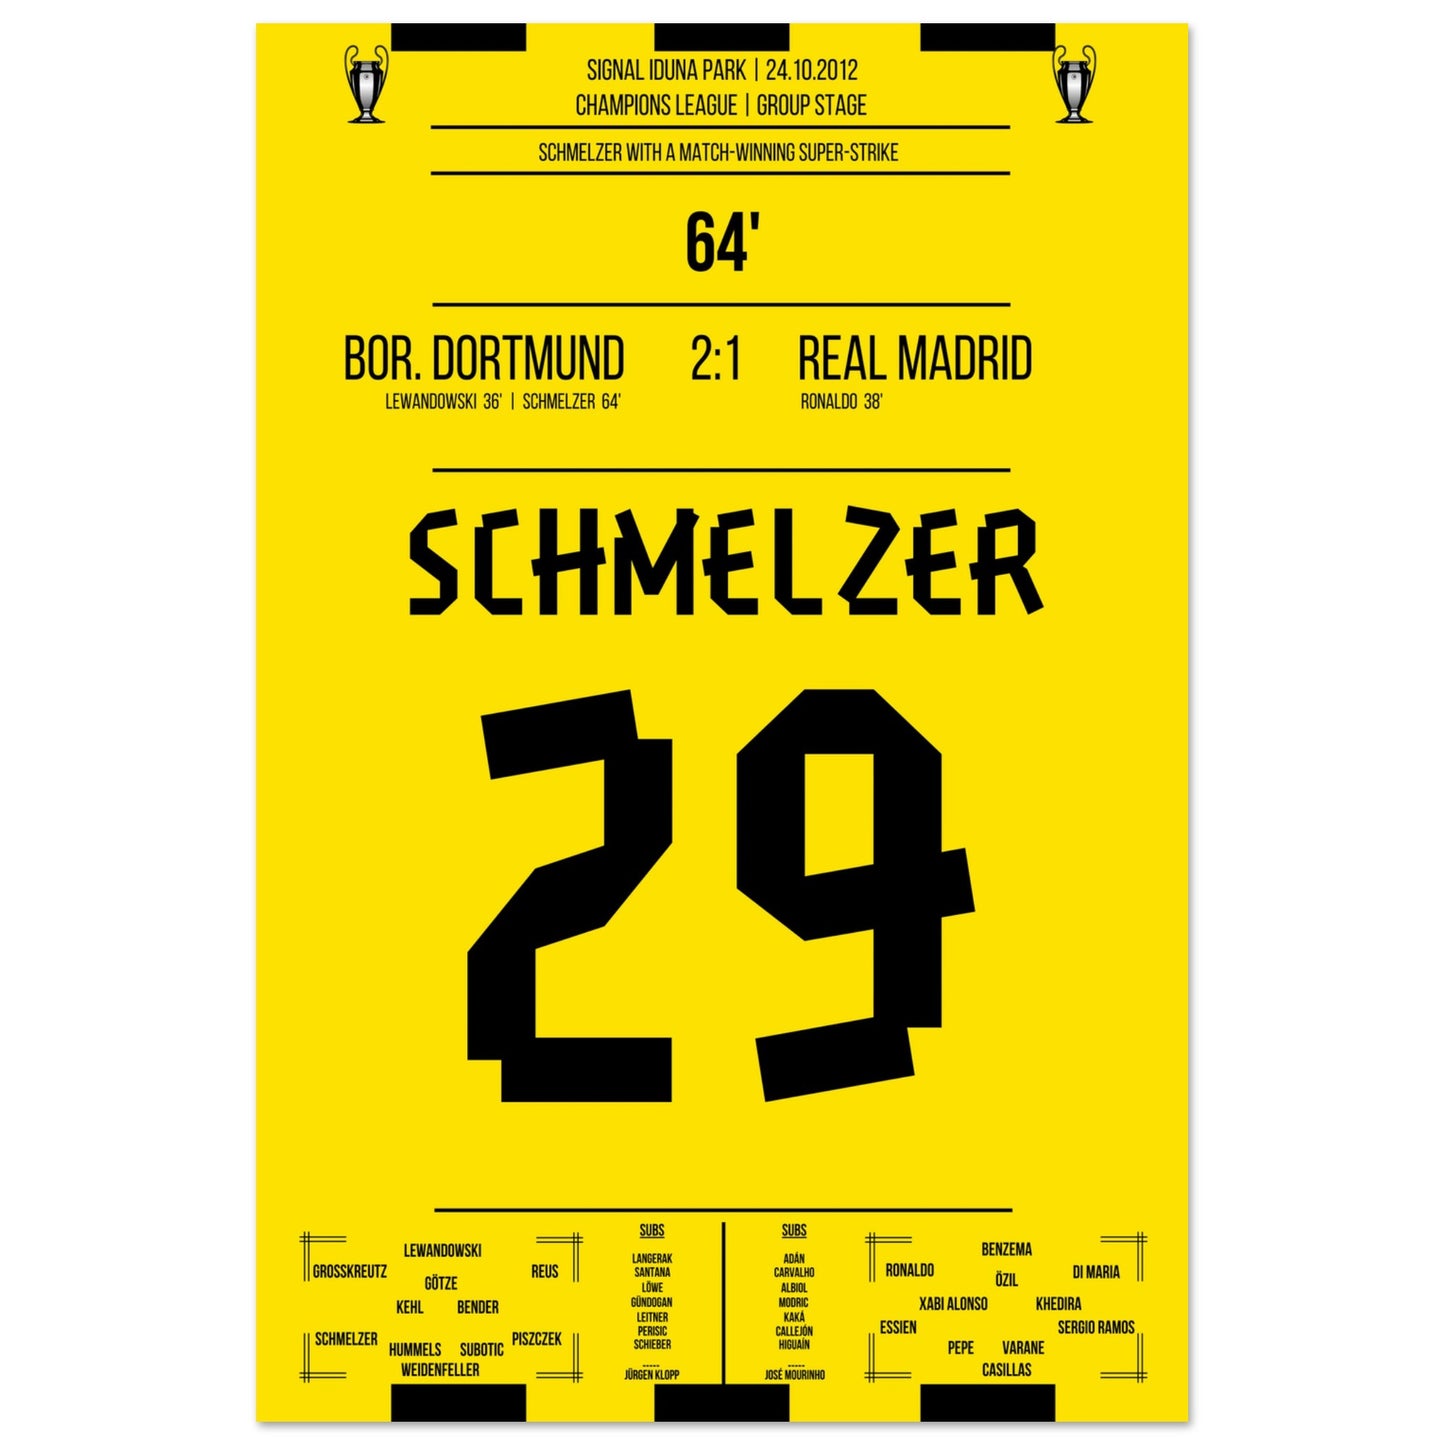 Schmelzer's linke Klebe gegen Real in der Champions League 2012